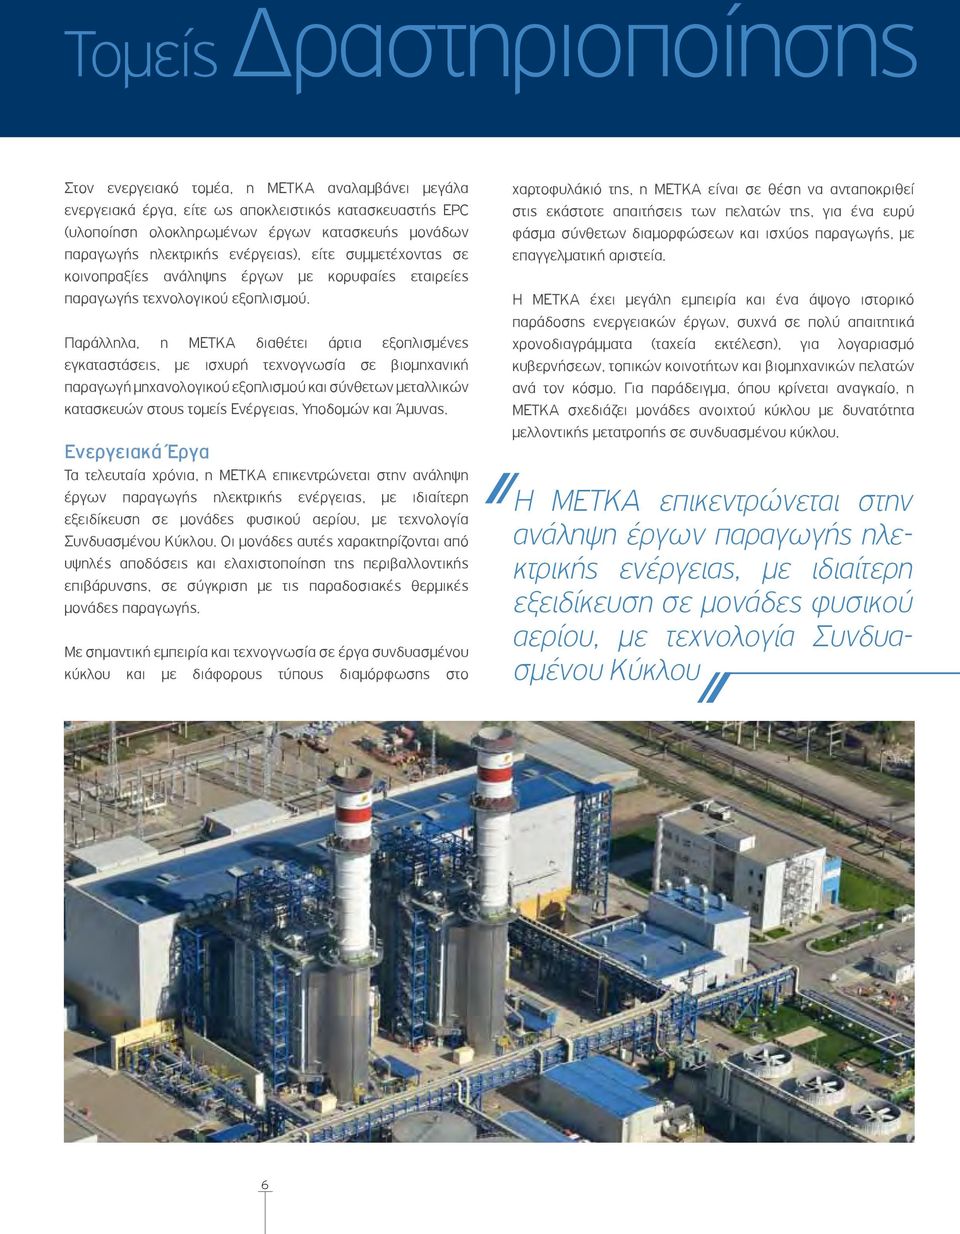 Παράλληλα, η METKA διαθέτει άρτια εξοπλισμένες εγκαταστάσεις, με ισχυρή τεχνογνωσία σε βιομηχανική παραγωγή μηχανολογικού εξοπλισμού και σύνθετων μεταλλικών κατασκευών στους τομείς Ενέργειας,